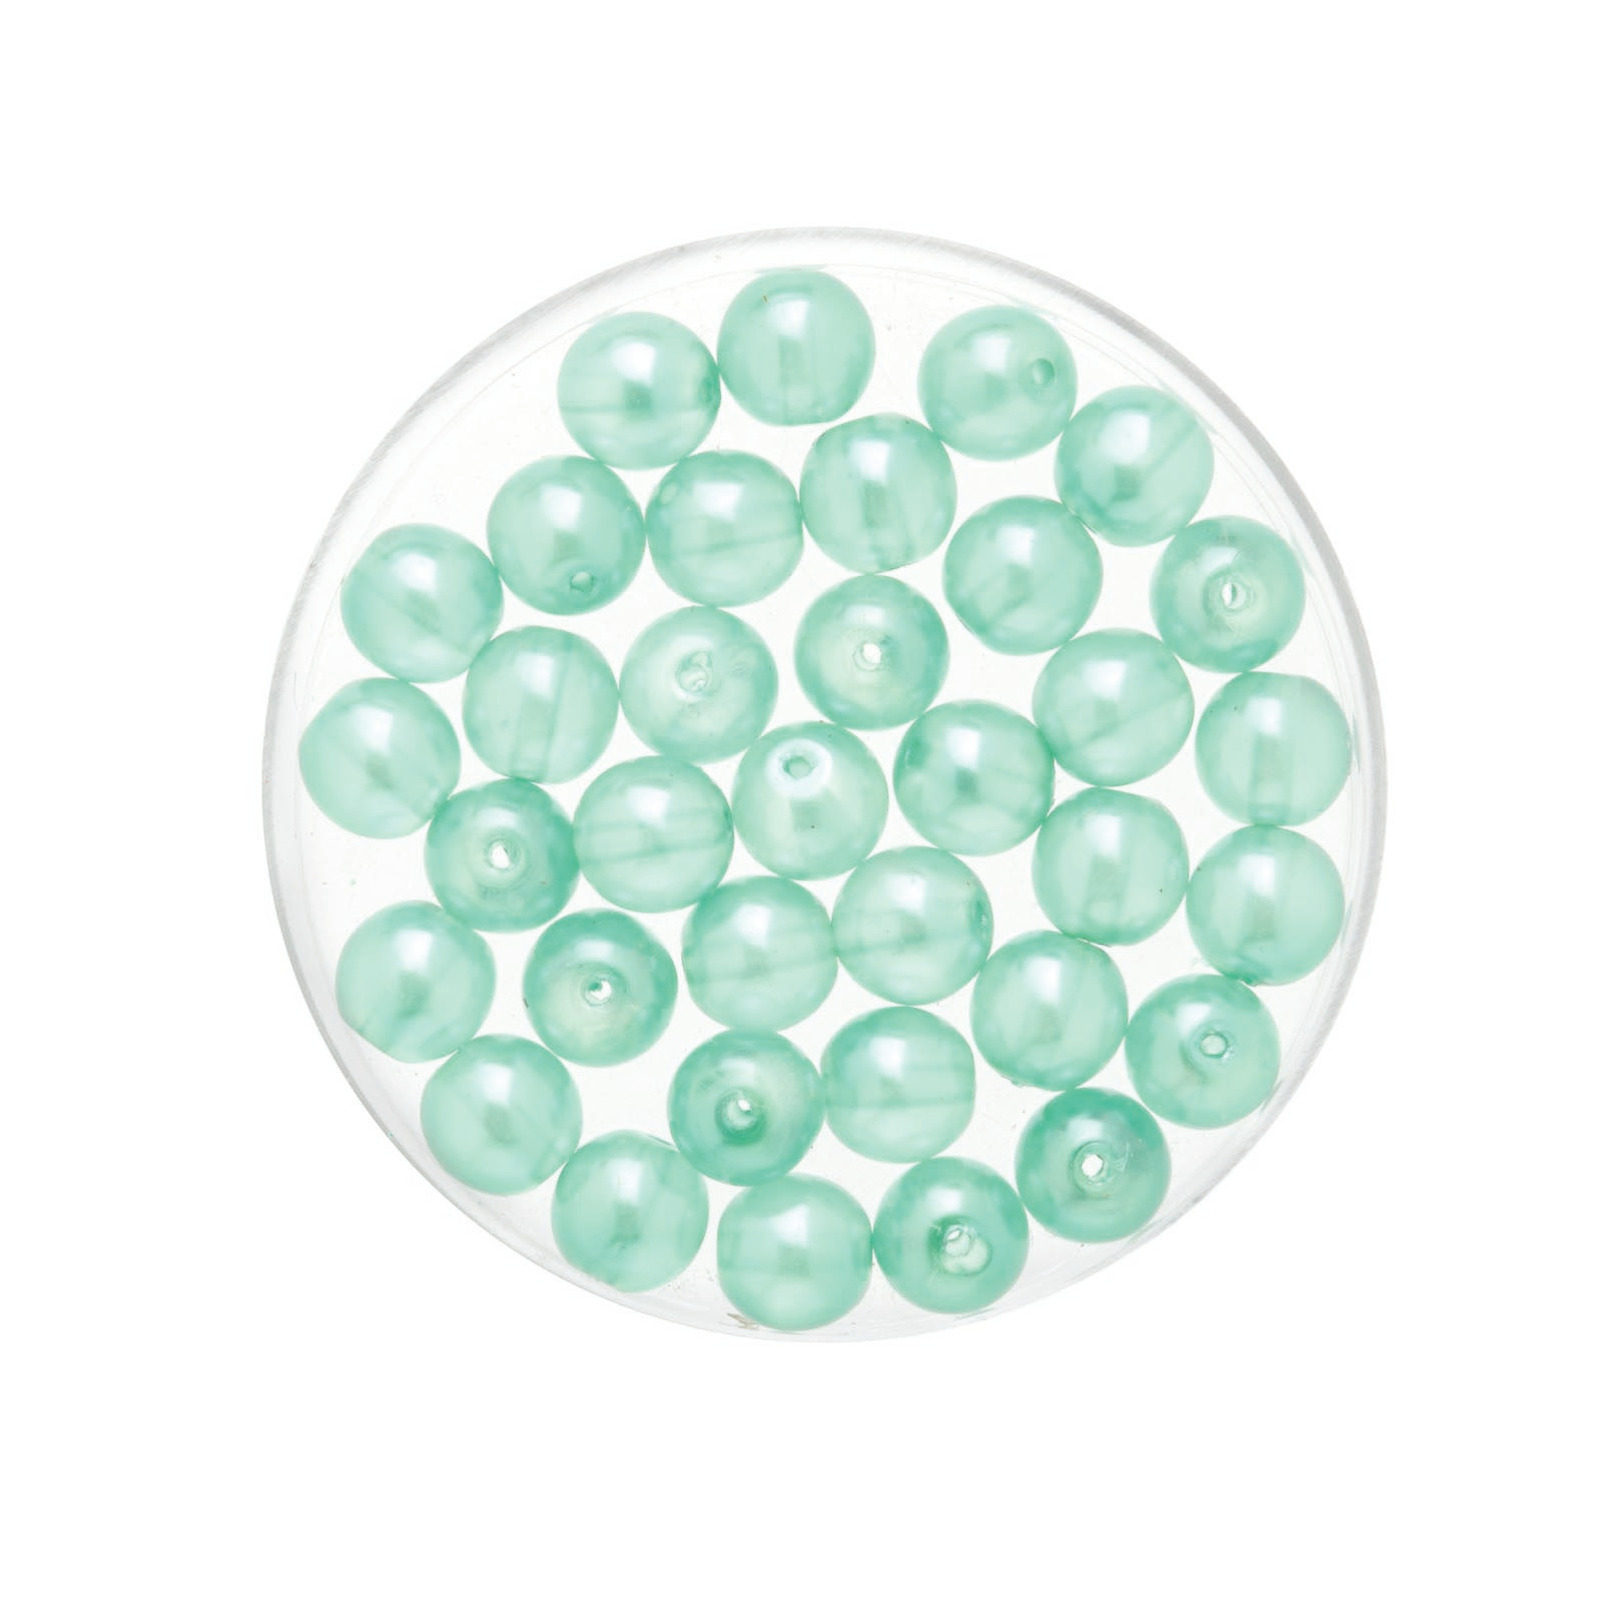 50x stuks sieraden maken Boheemse glaskralen in het transparant aqua blauw van 6 mm